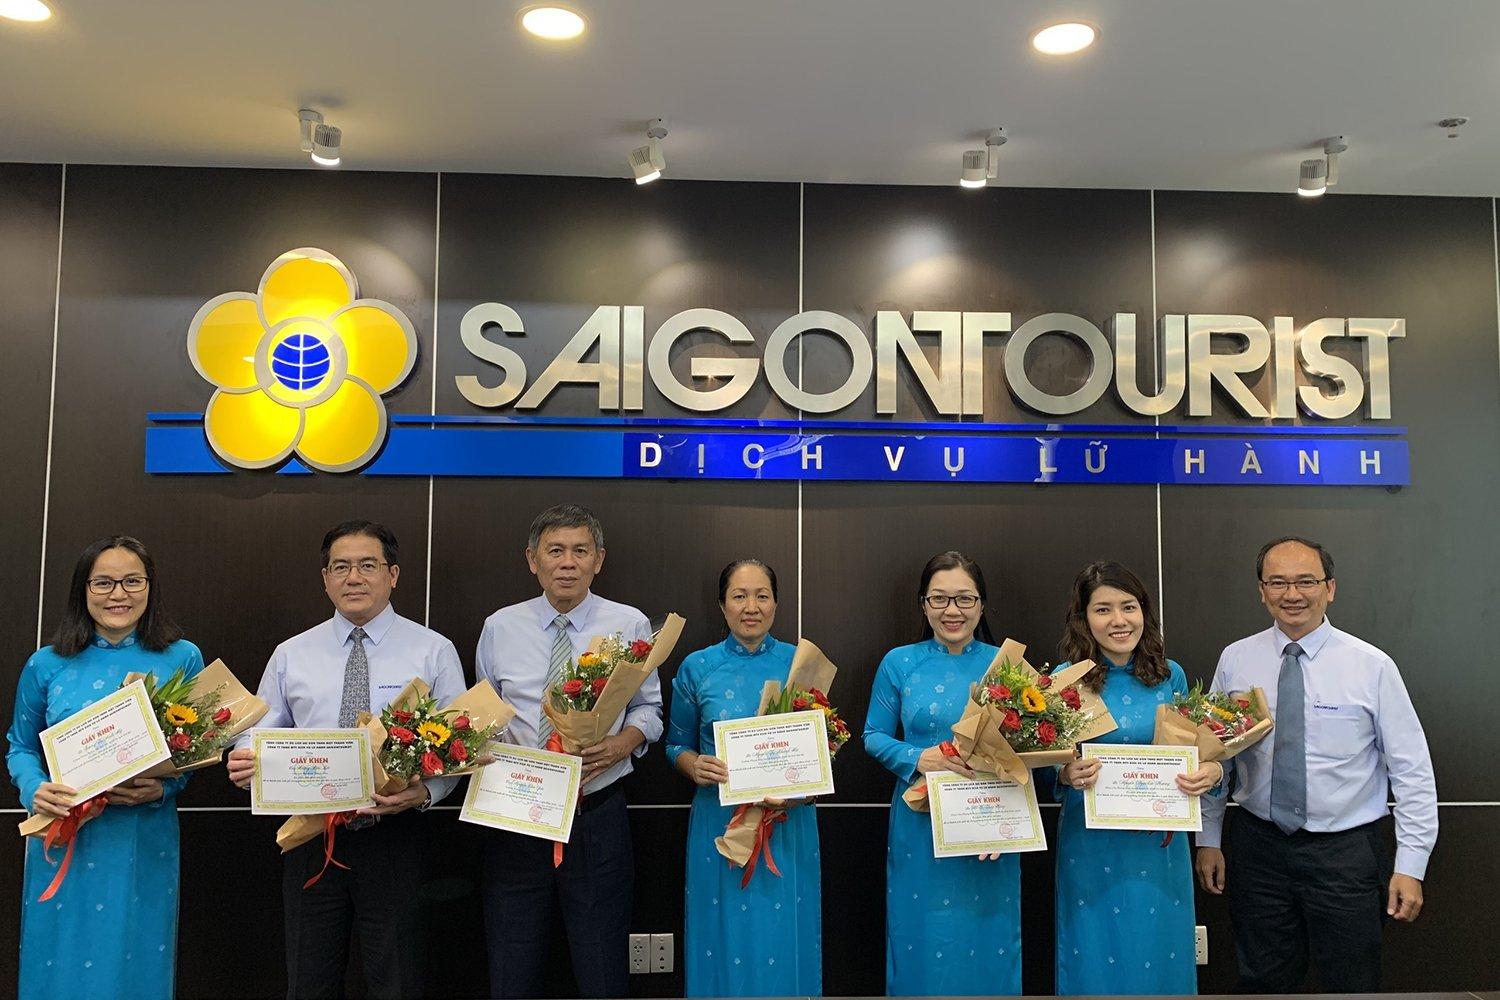 Hình ảnh các thầy cô tại Trường trung cấp Du lịch và Khách sạn Saigontourist. (Nguồn: Internet)